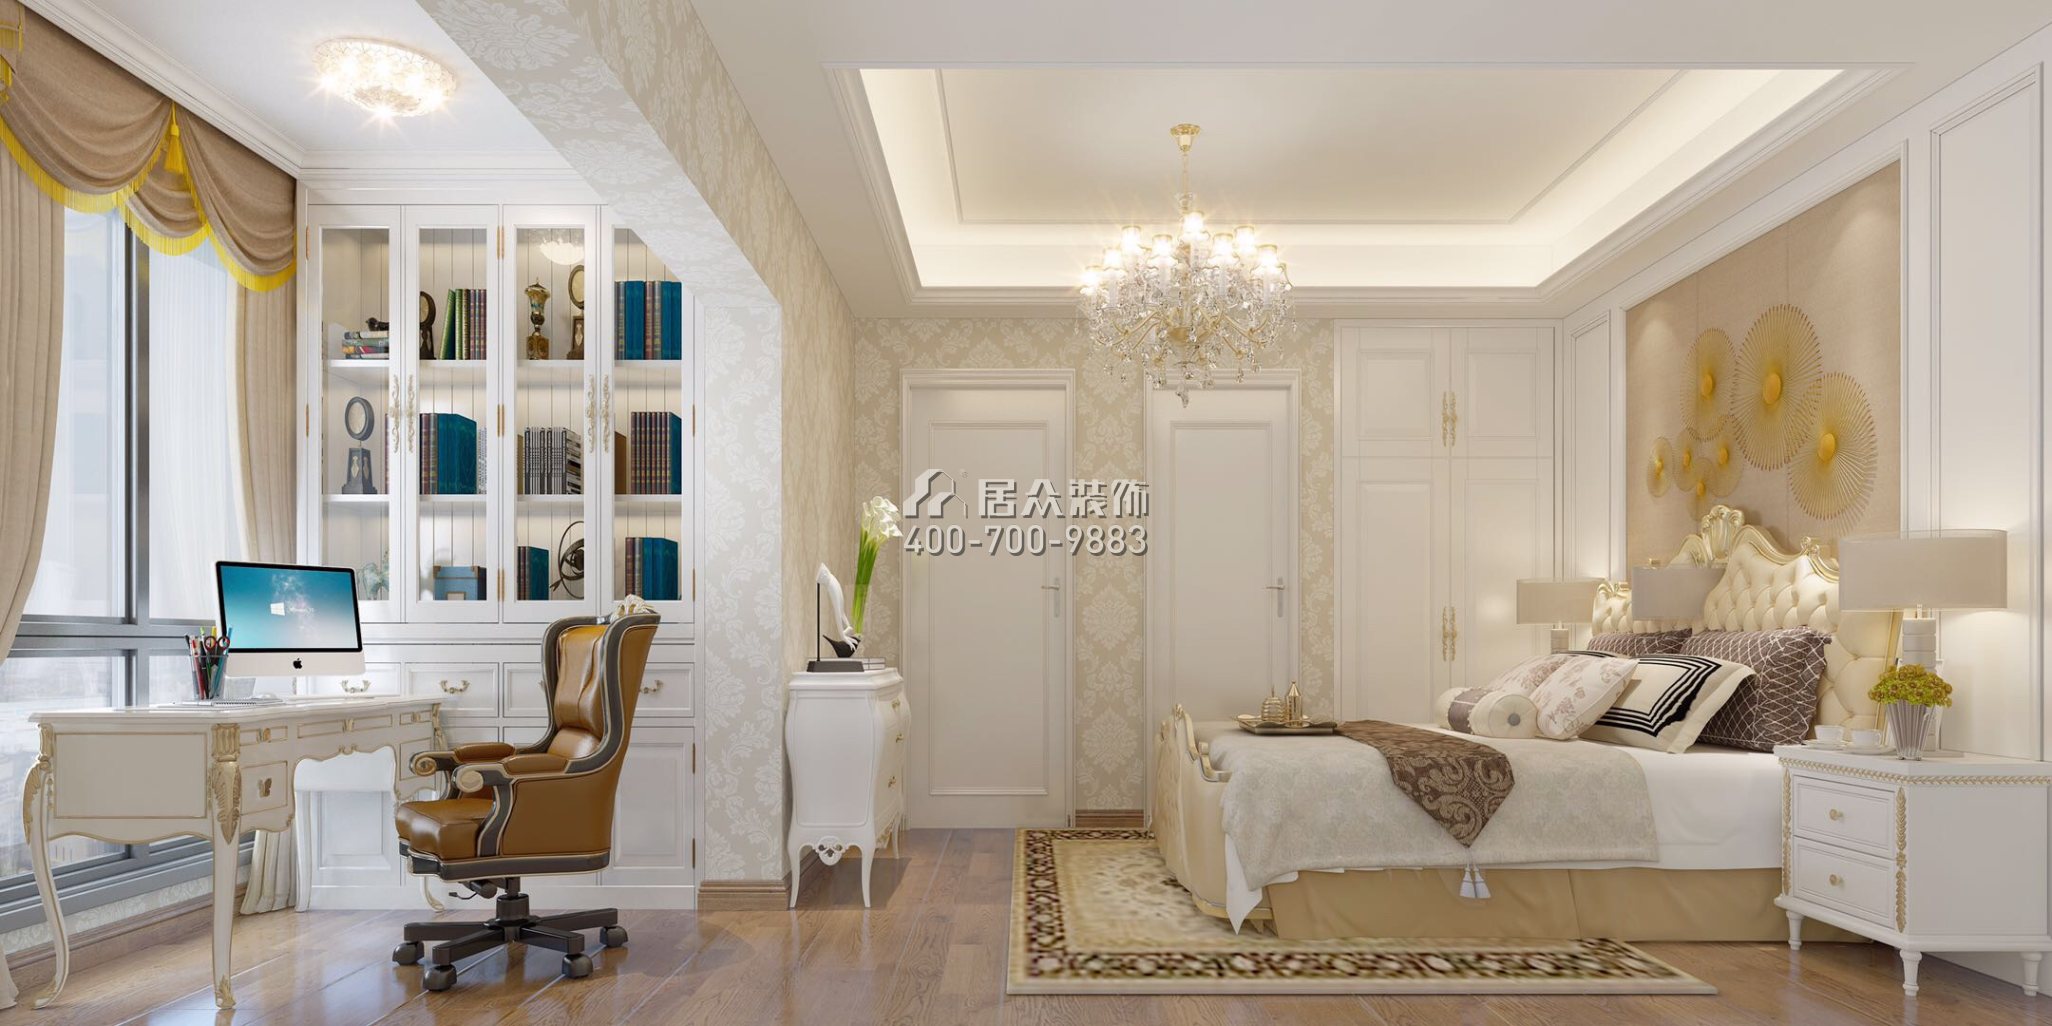 海印長城110平方米歐式風格平層戶型臥室裝修效果圖